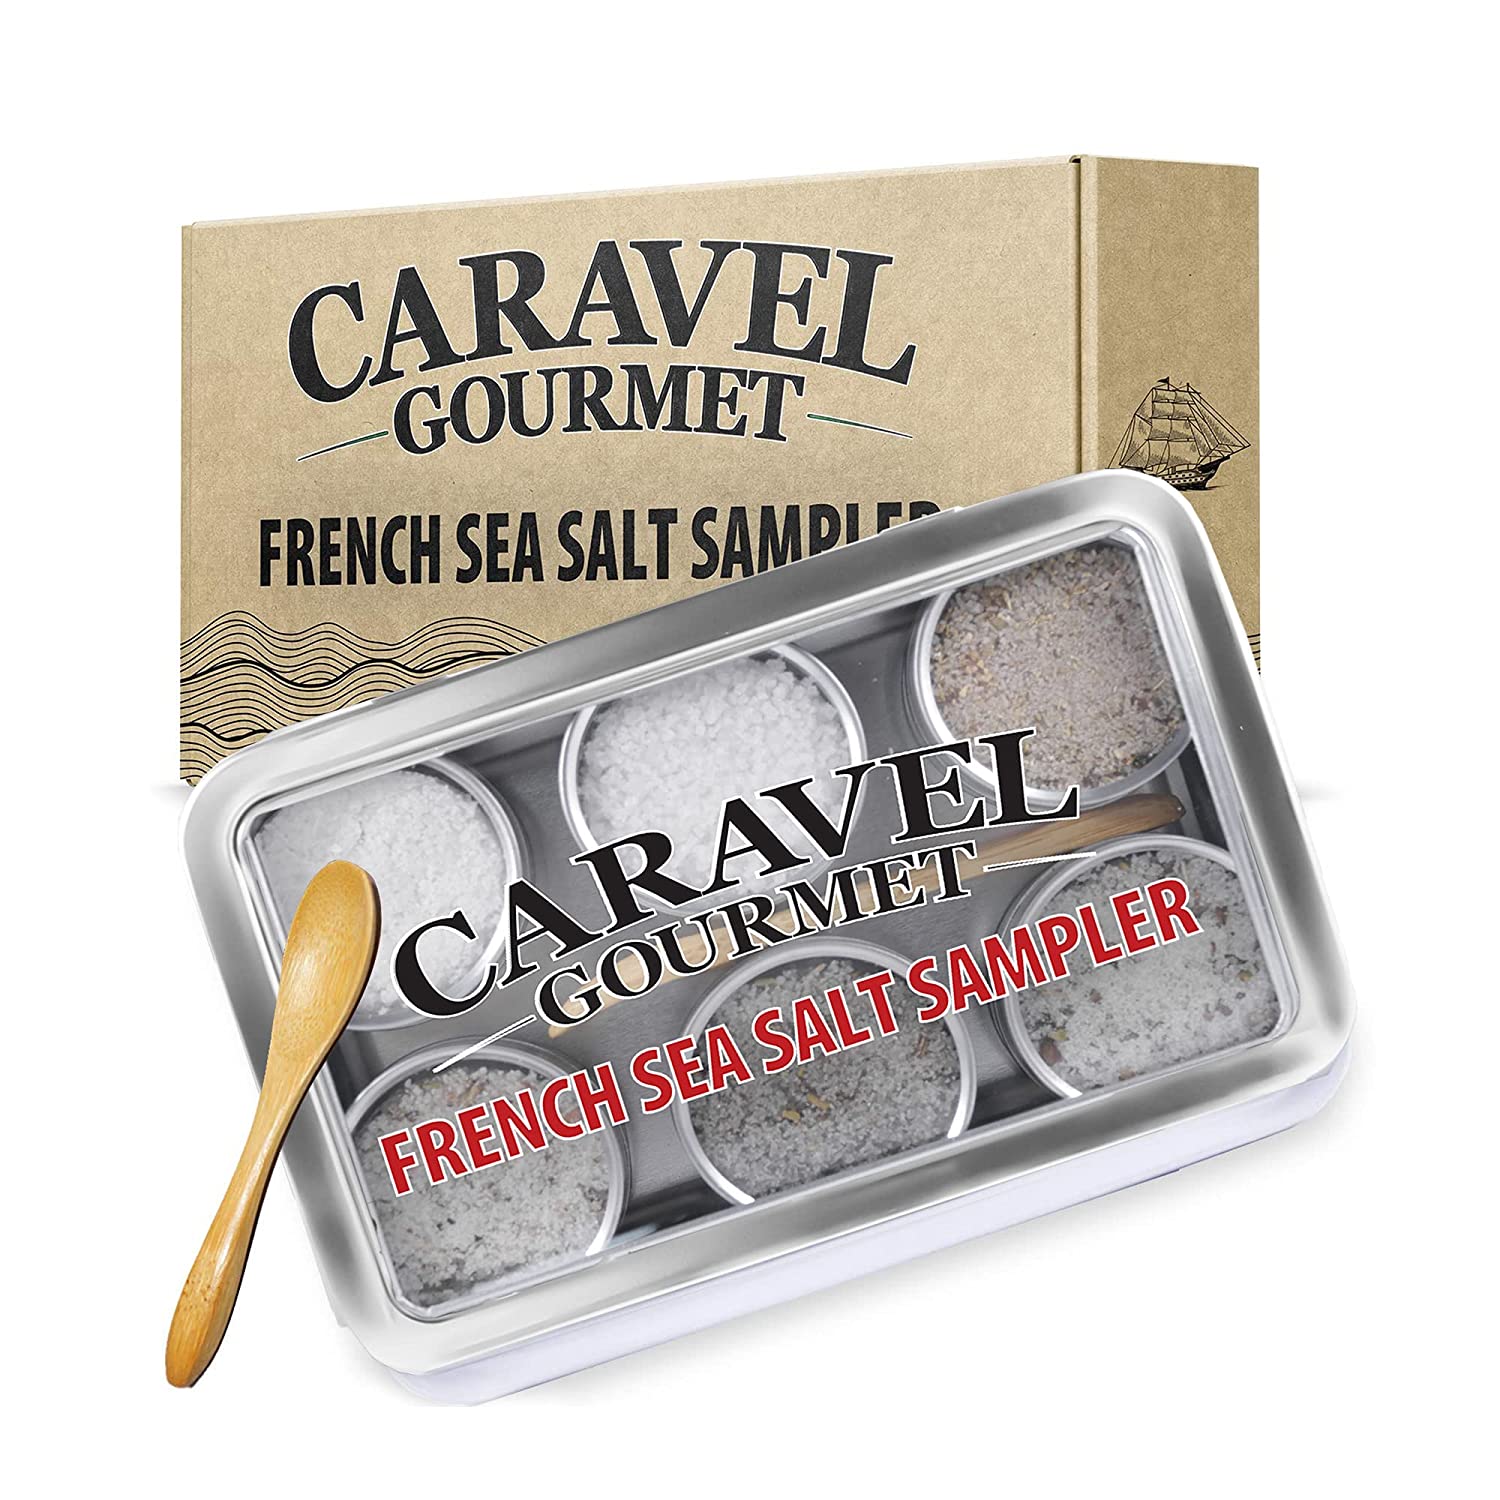 French sea salt sampler